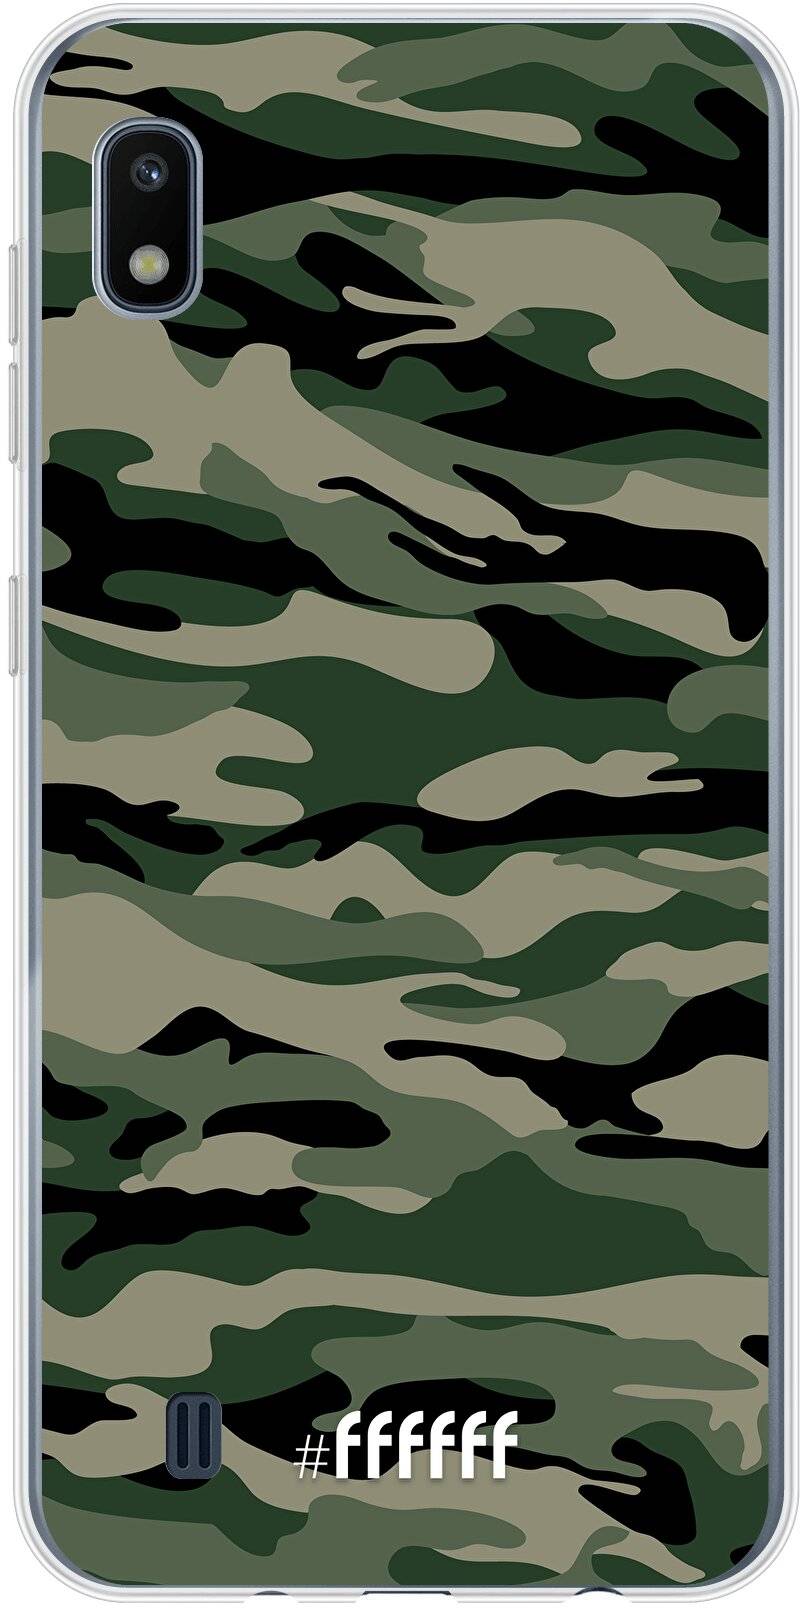 Woodland Camouflage Galaxy A10